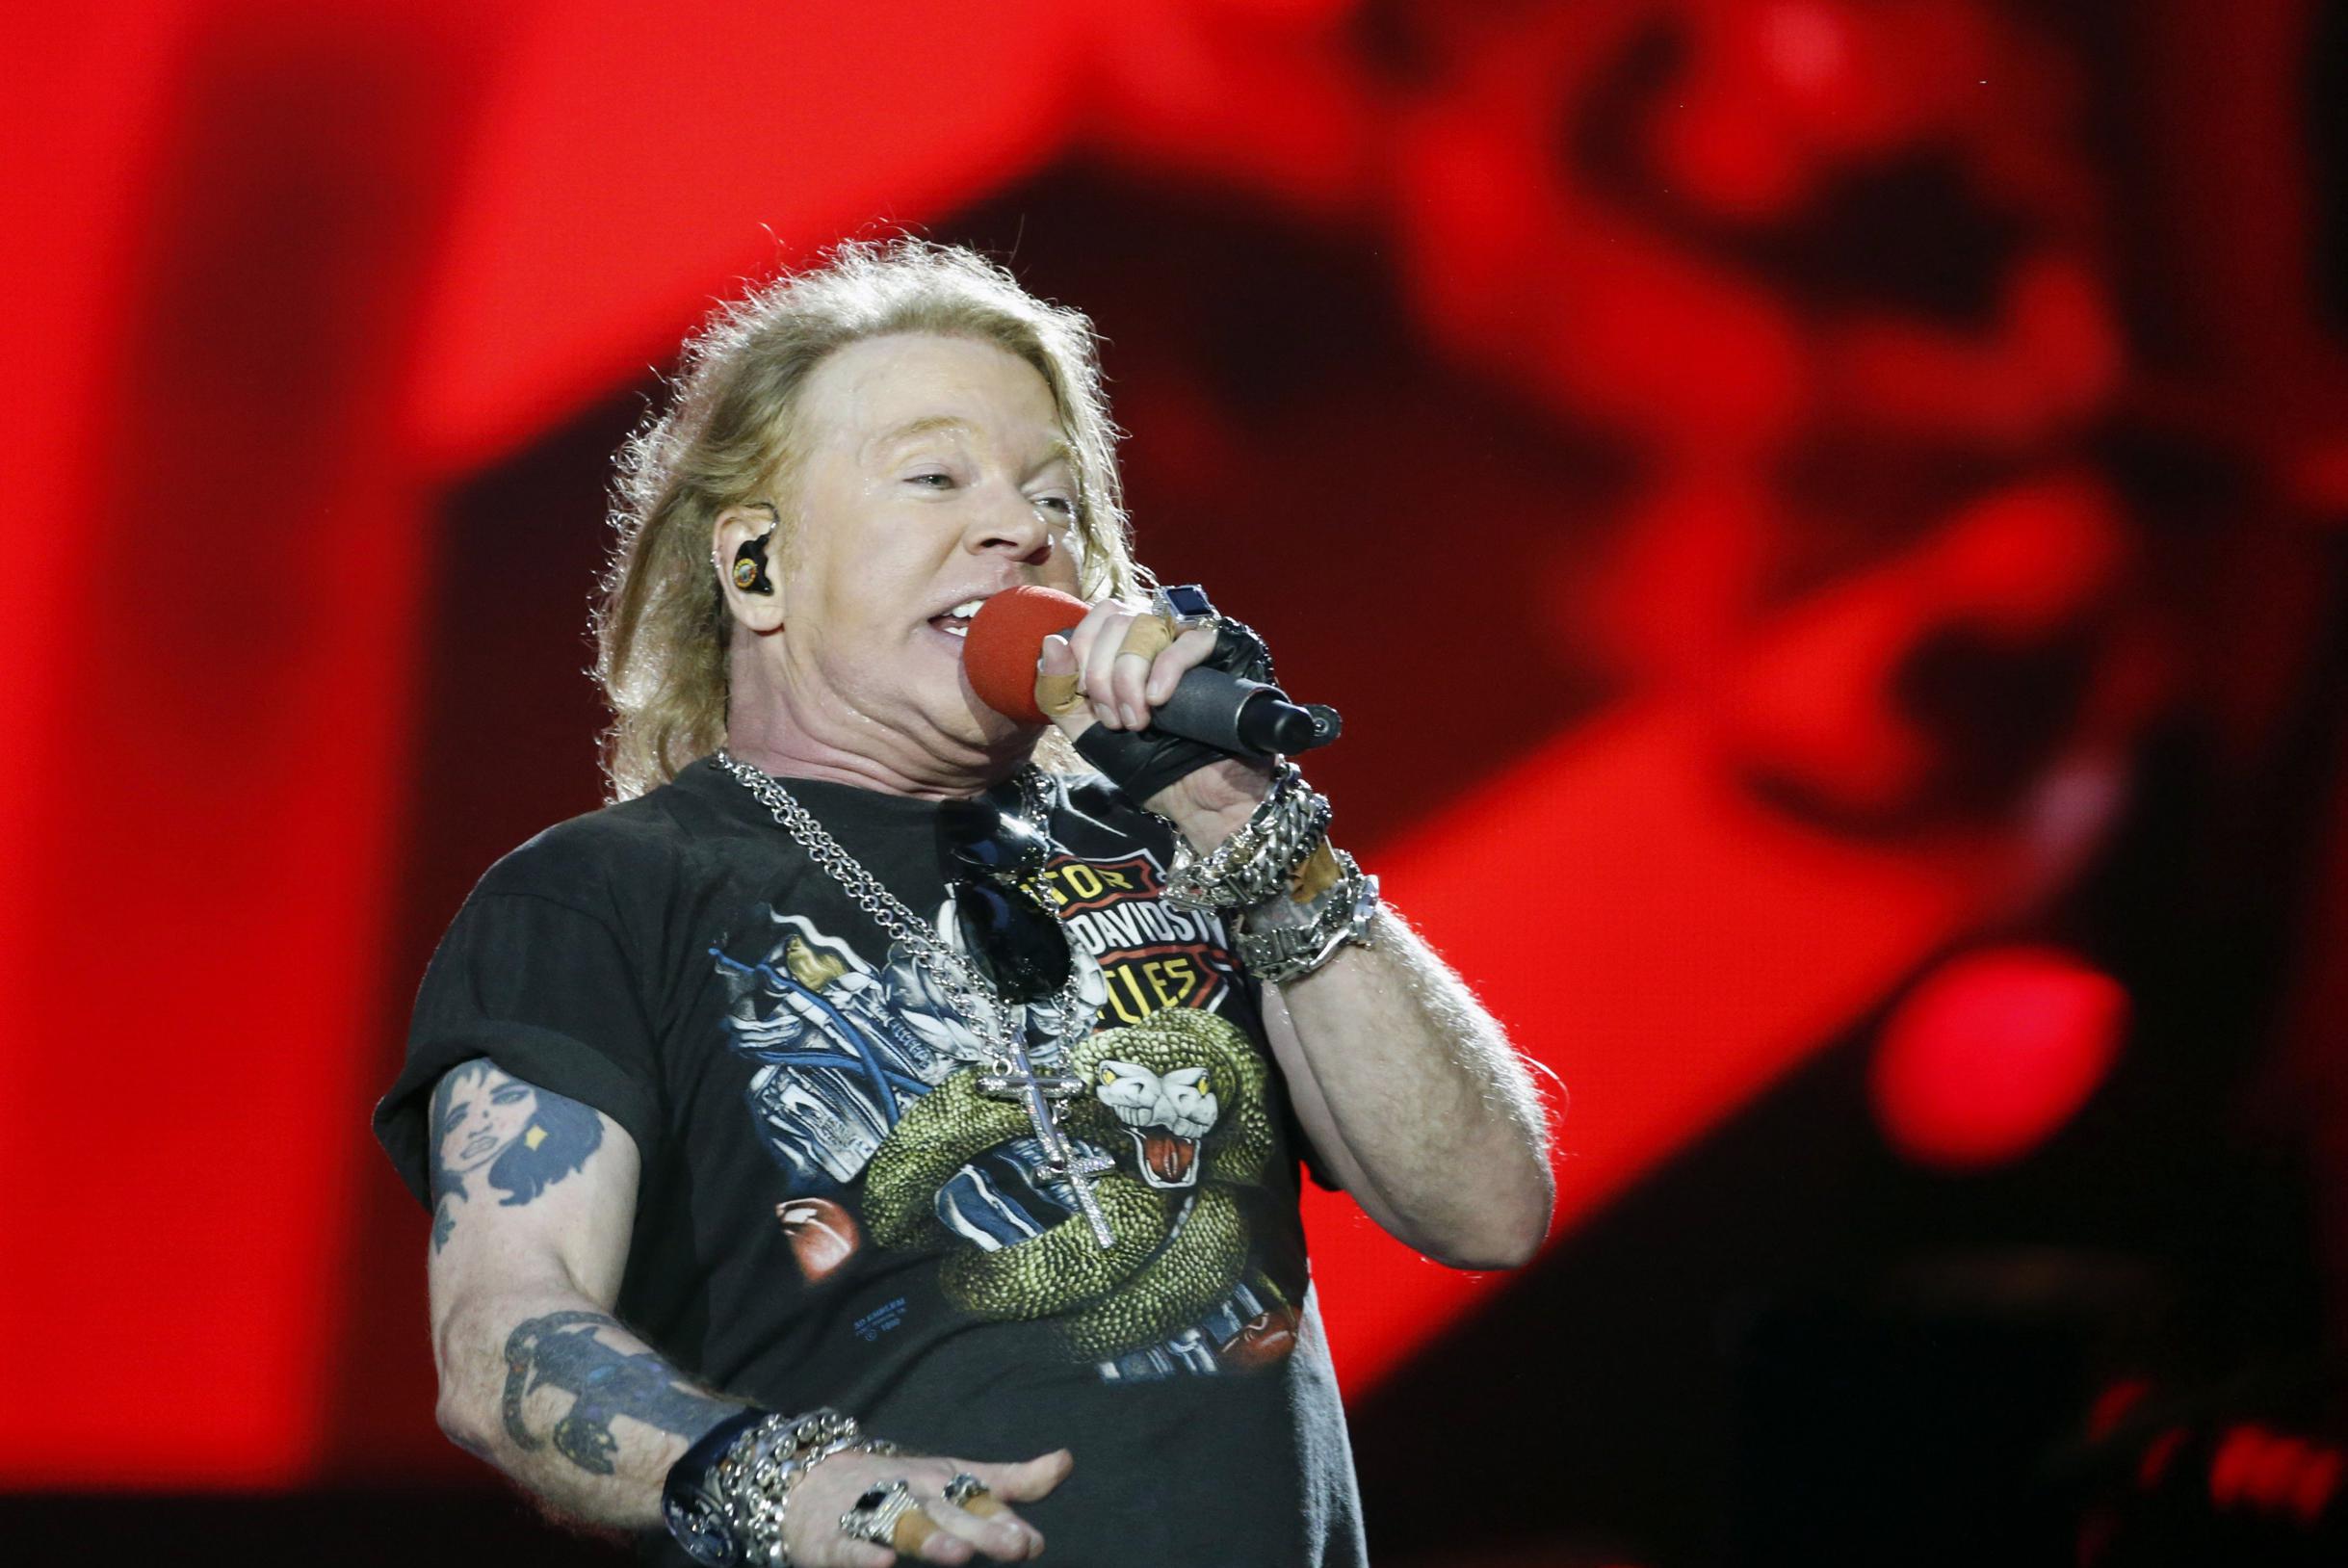 Una fan dei Guns N’ Roses si mette il microfono in faccia, il cantante Axl Rose risponde: “Lo facciamo da 30 anni, ma adesso smettiamo”